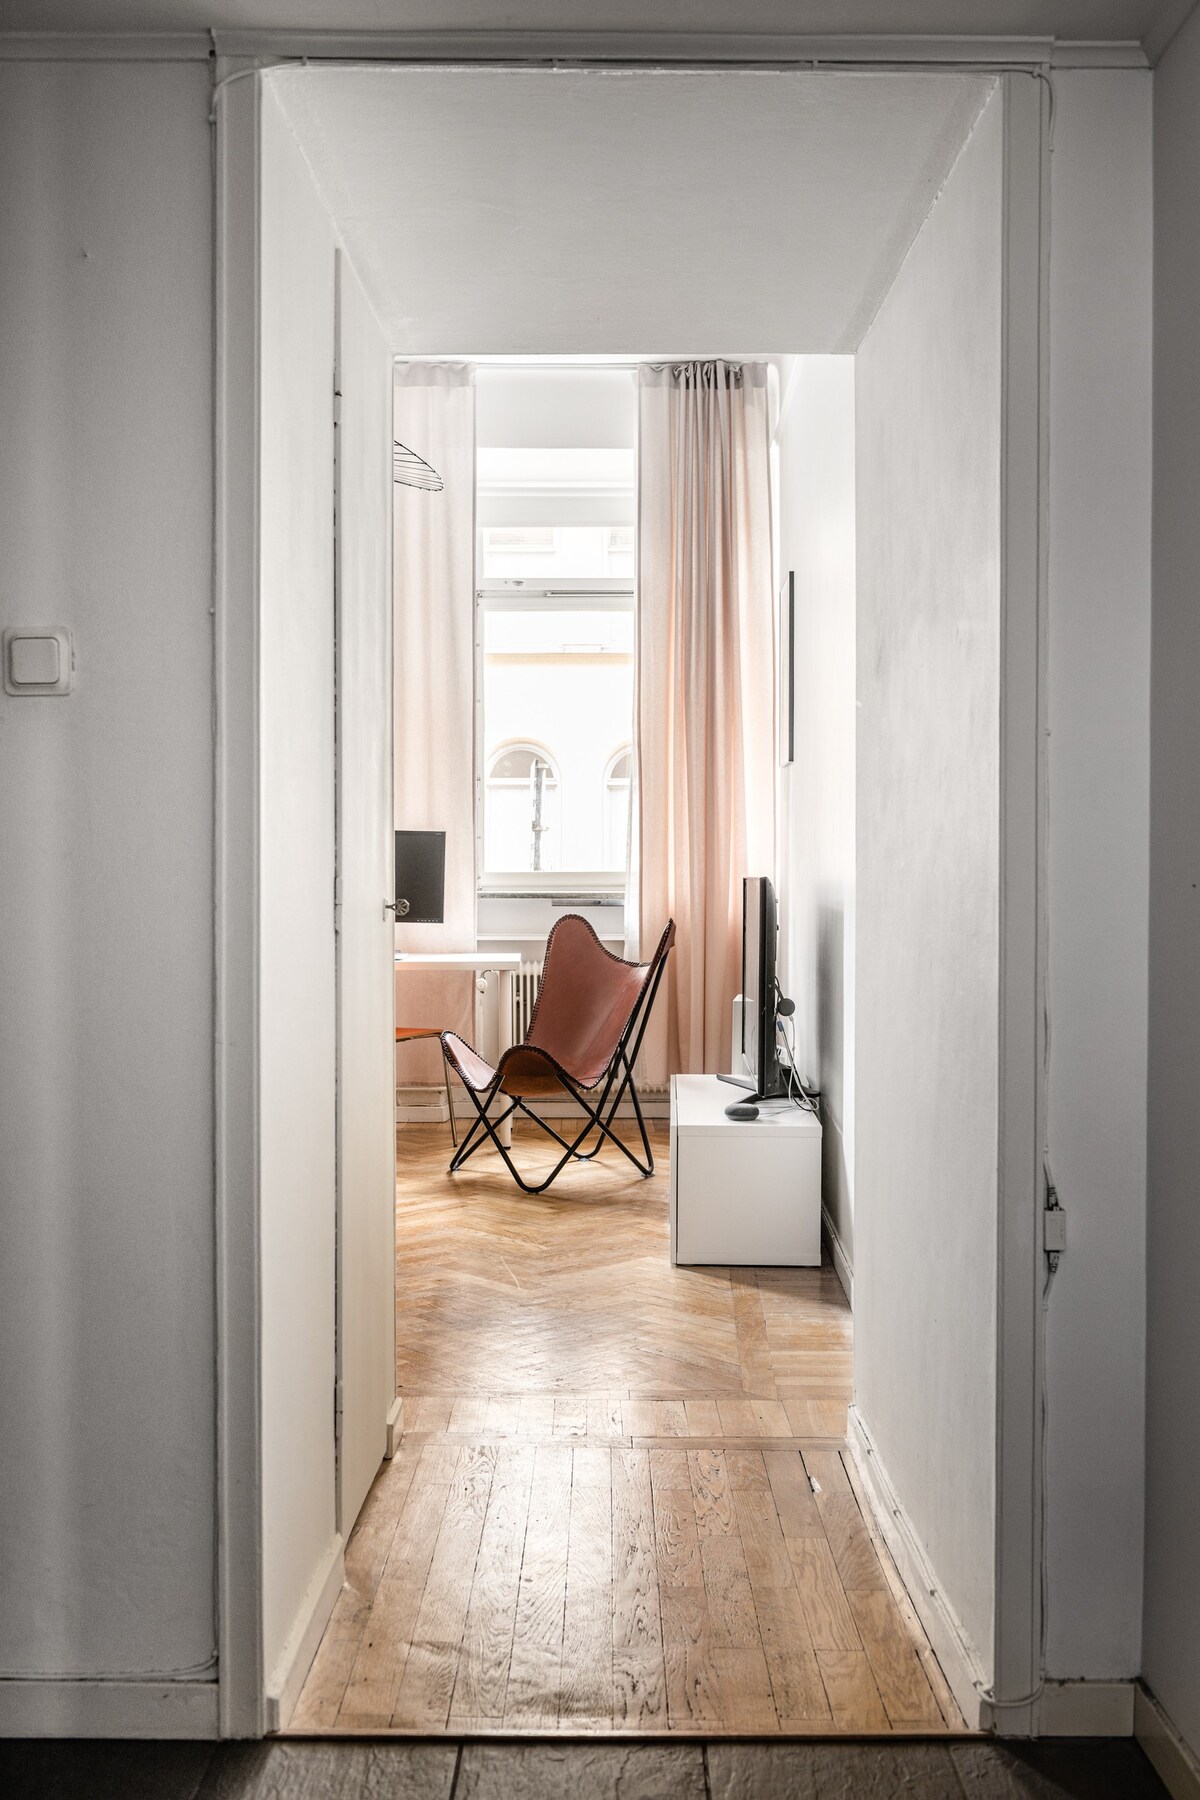 Kungsholmen的可爱公寓-地理位置优越